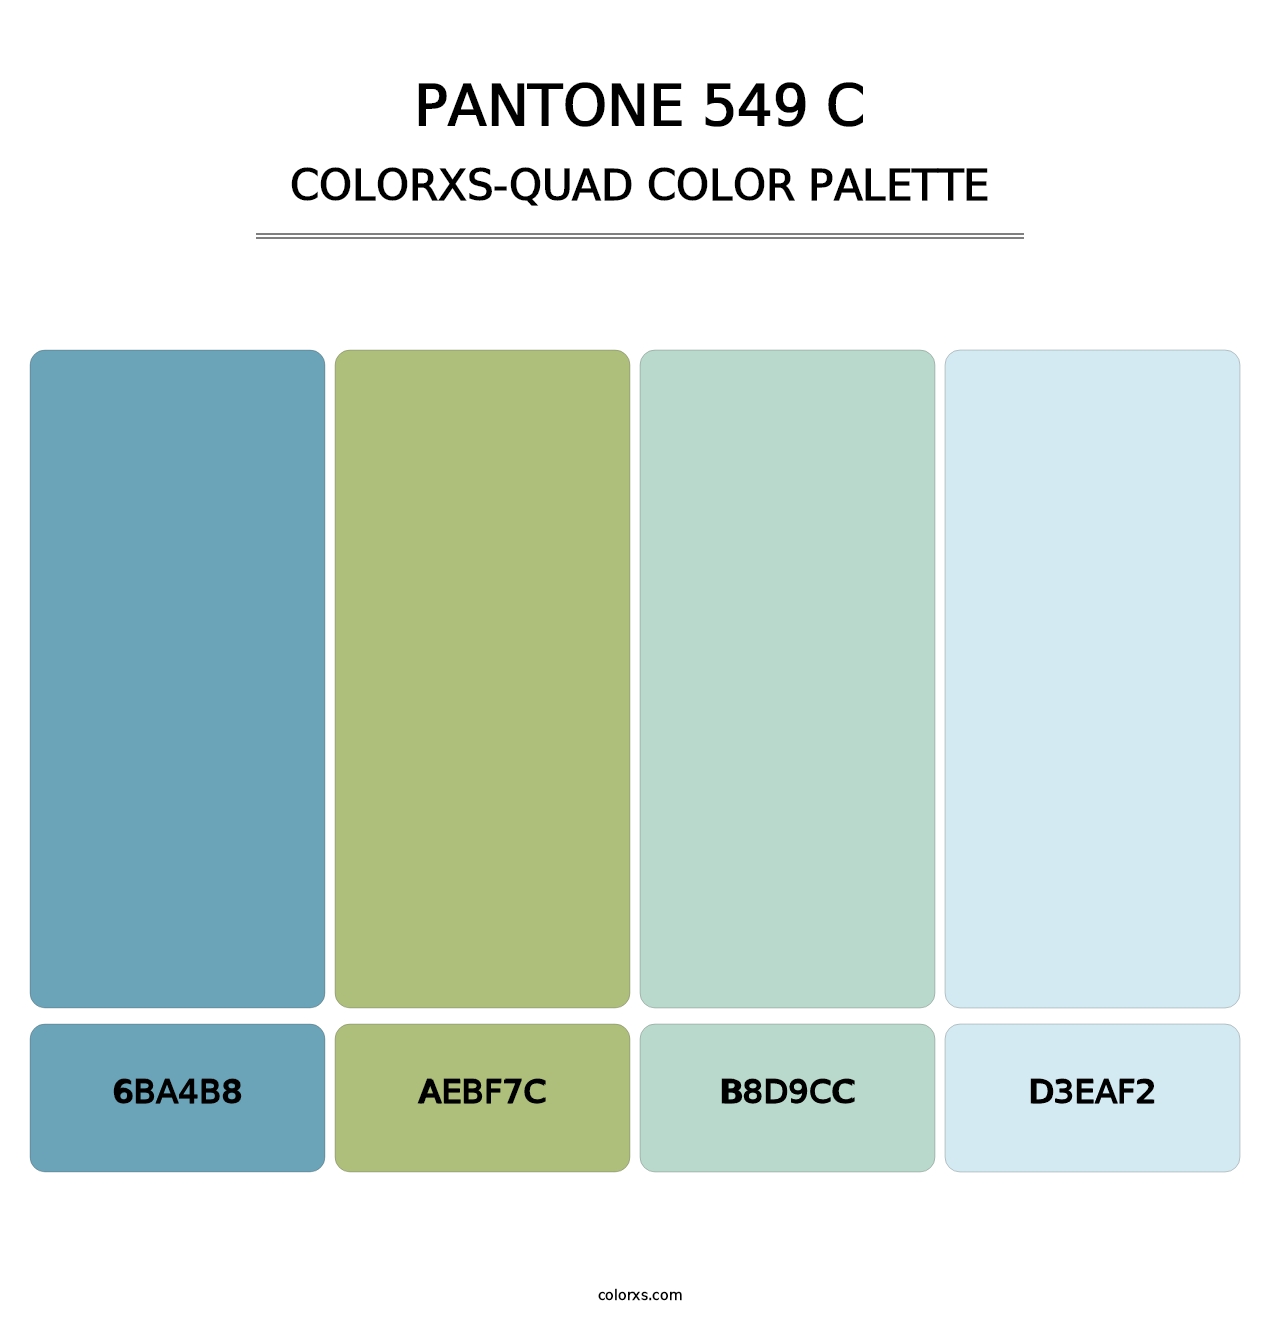 PANTONE 549 C - Colorxs Quad Palette